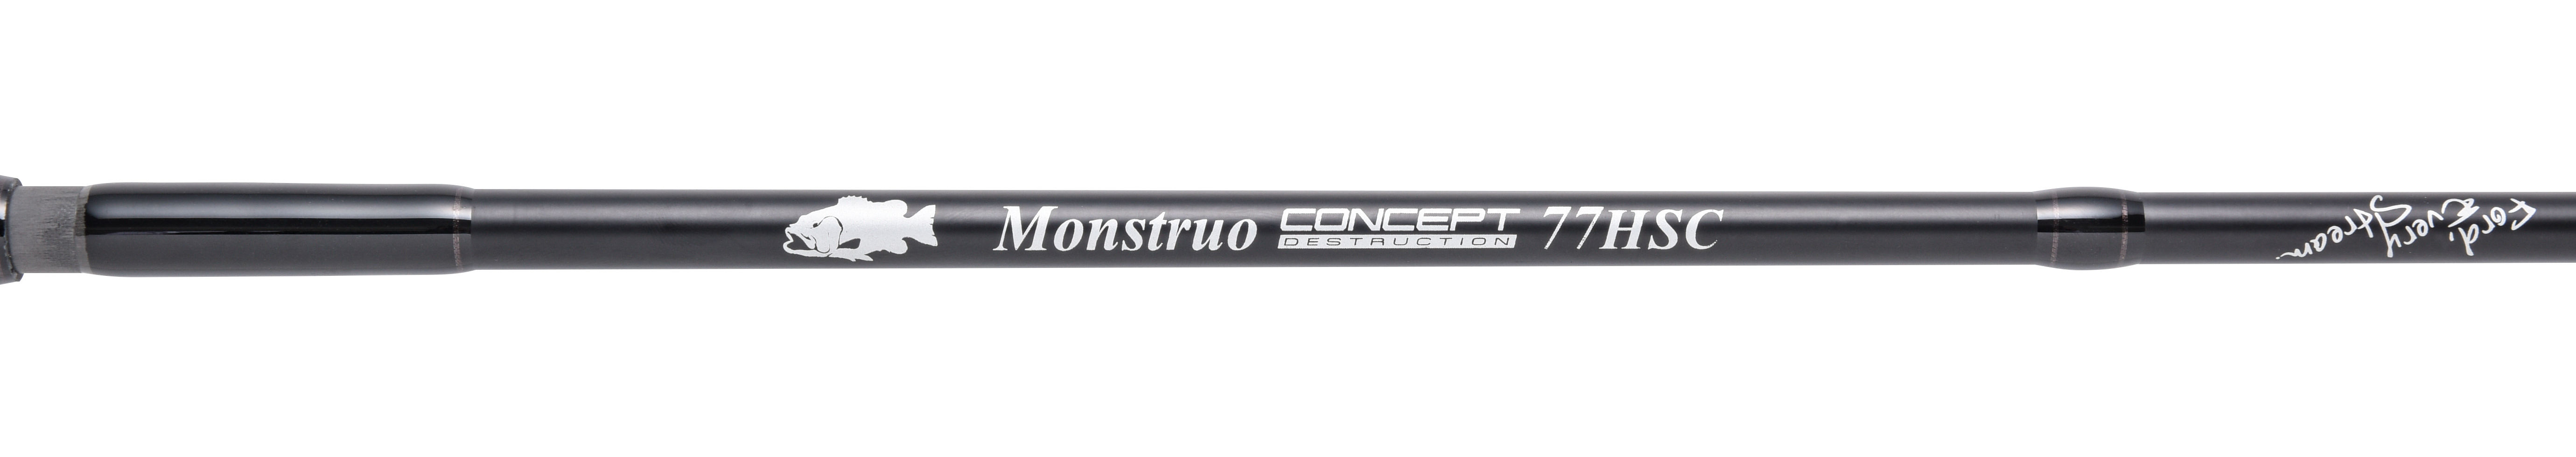 Monstruo”ConceptDestruction” 77HSC | グリップ